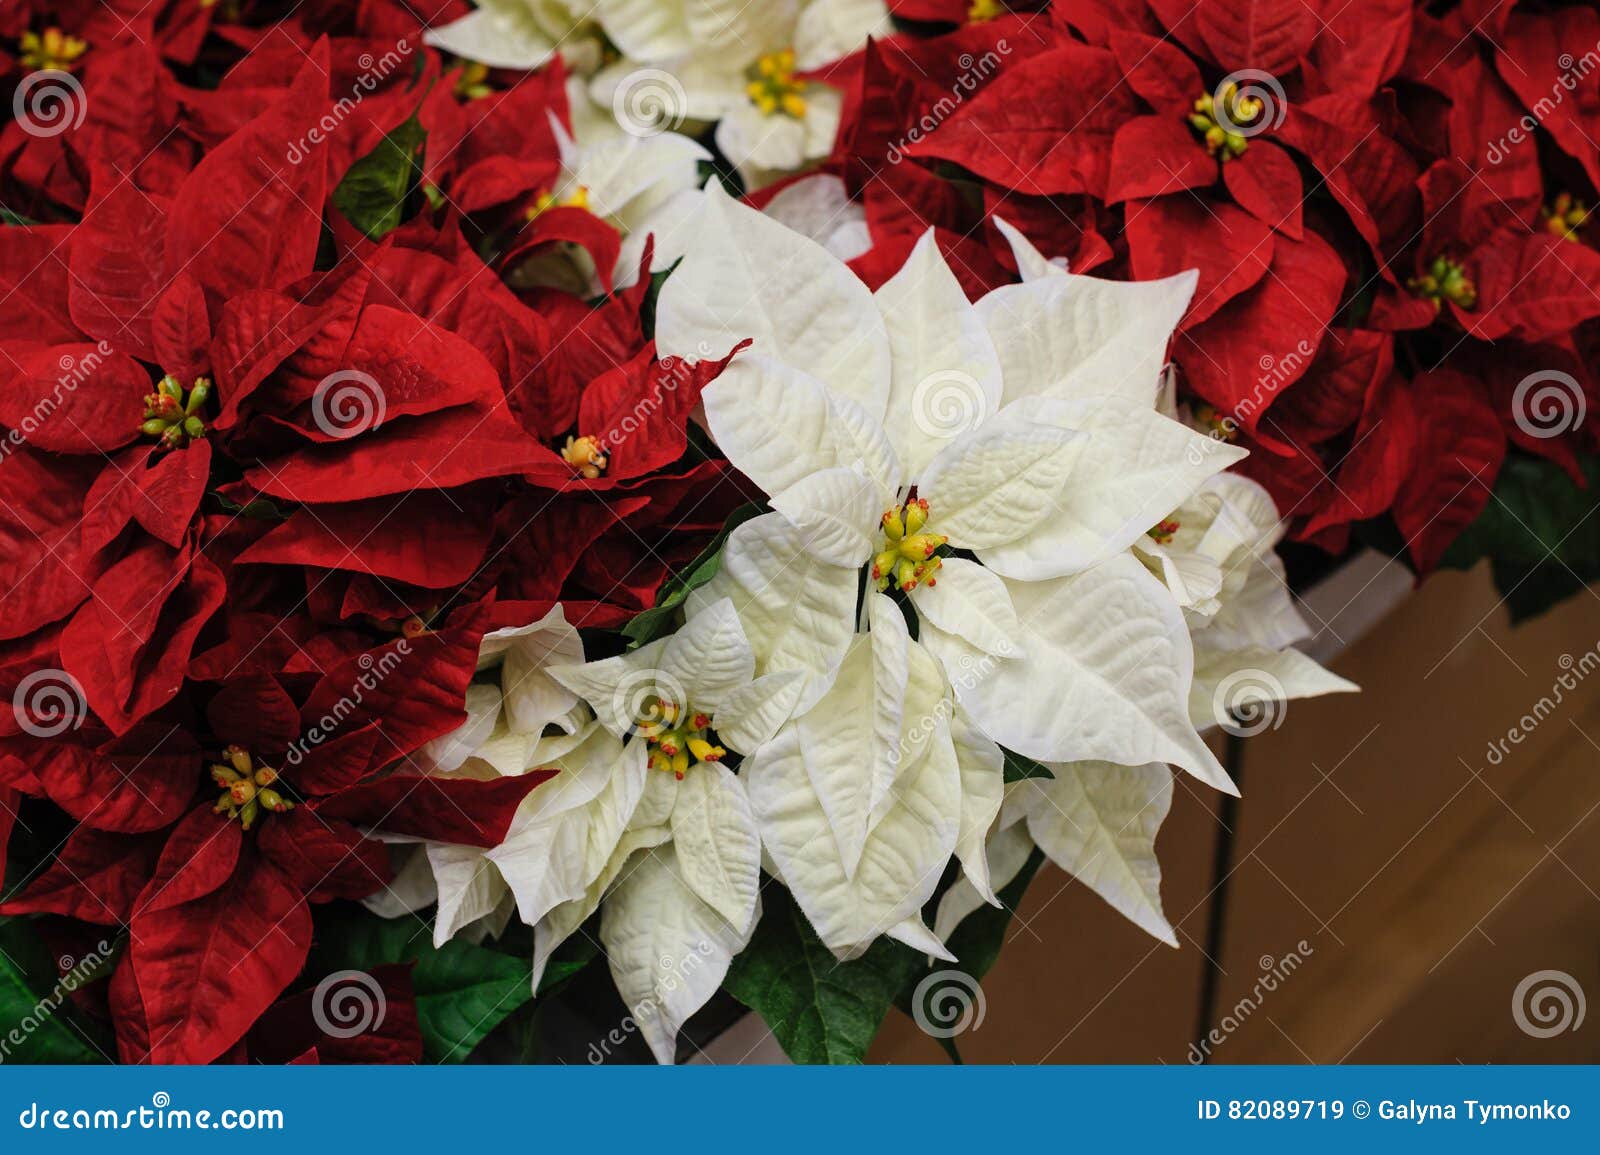 Étoile De Noël De Fleurs Rouges Et Blanches Image stock - Image du  poinsettia, ornement: 82089719